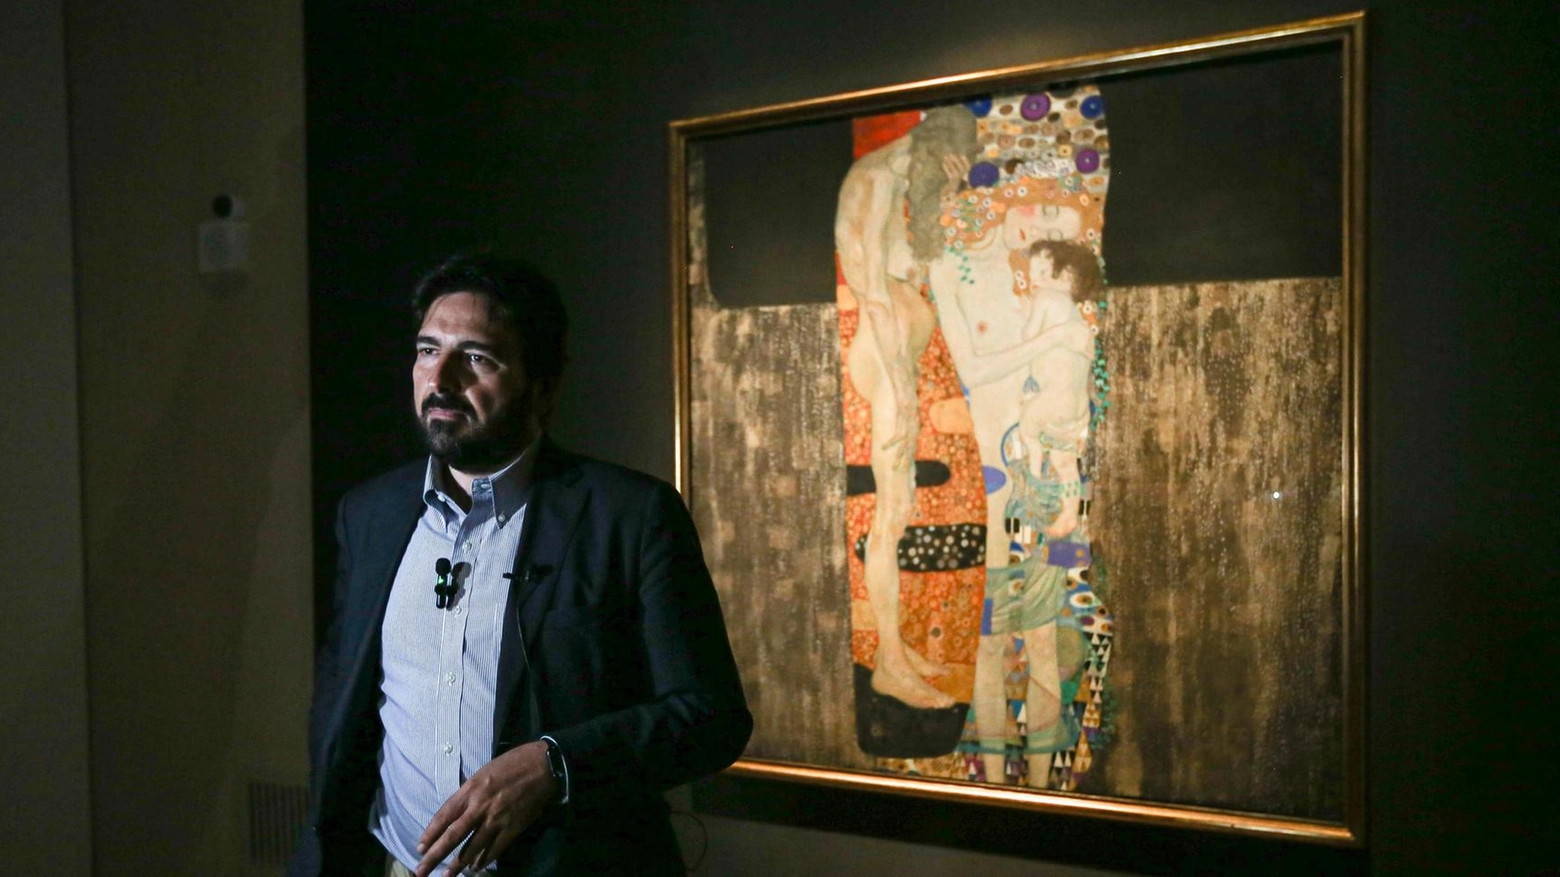 Il capolavoro di Klimt a Perugia “Le tre età“ alla Galleria Nazionale